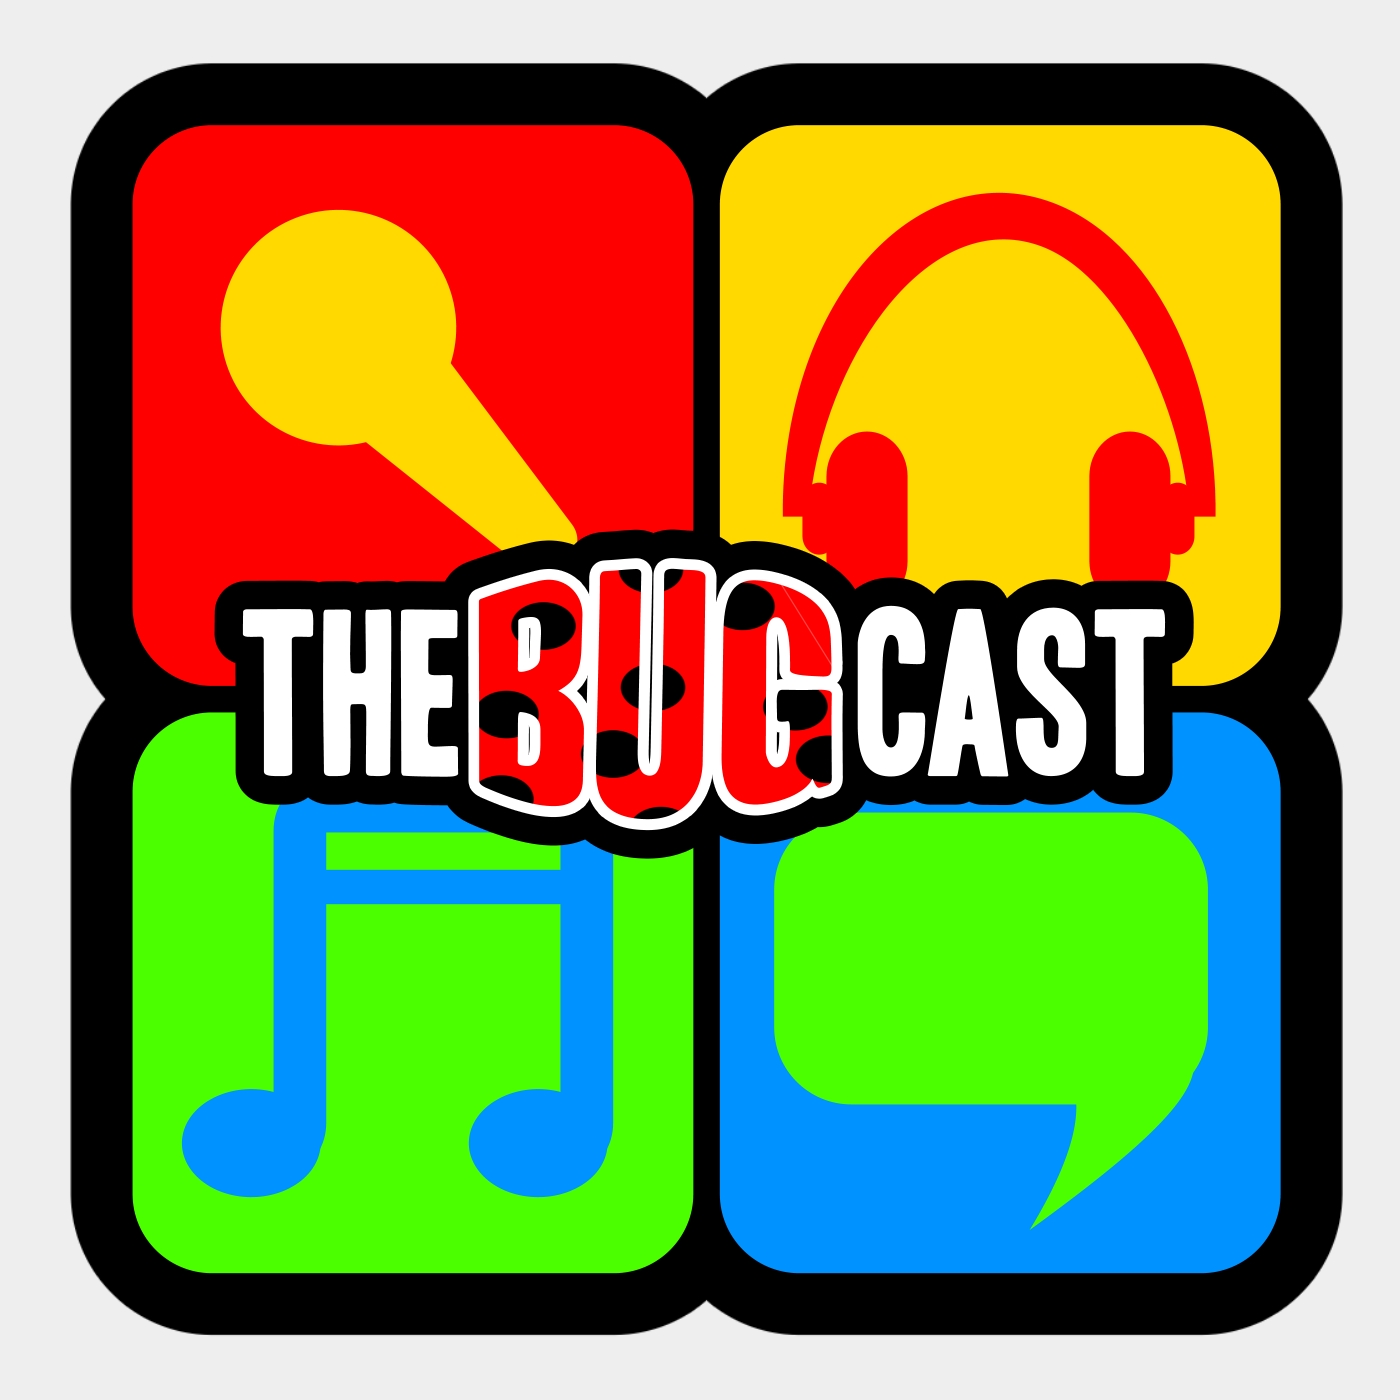 TheBugcast